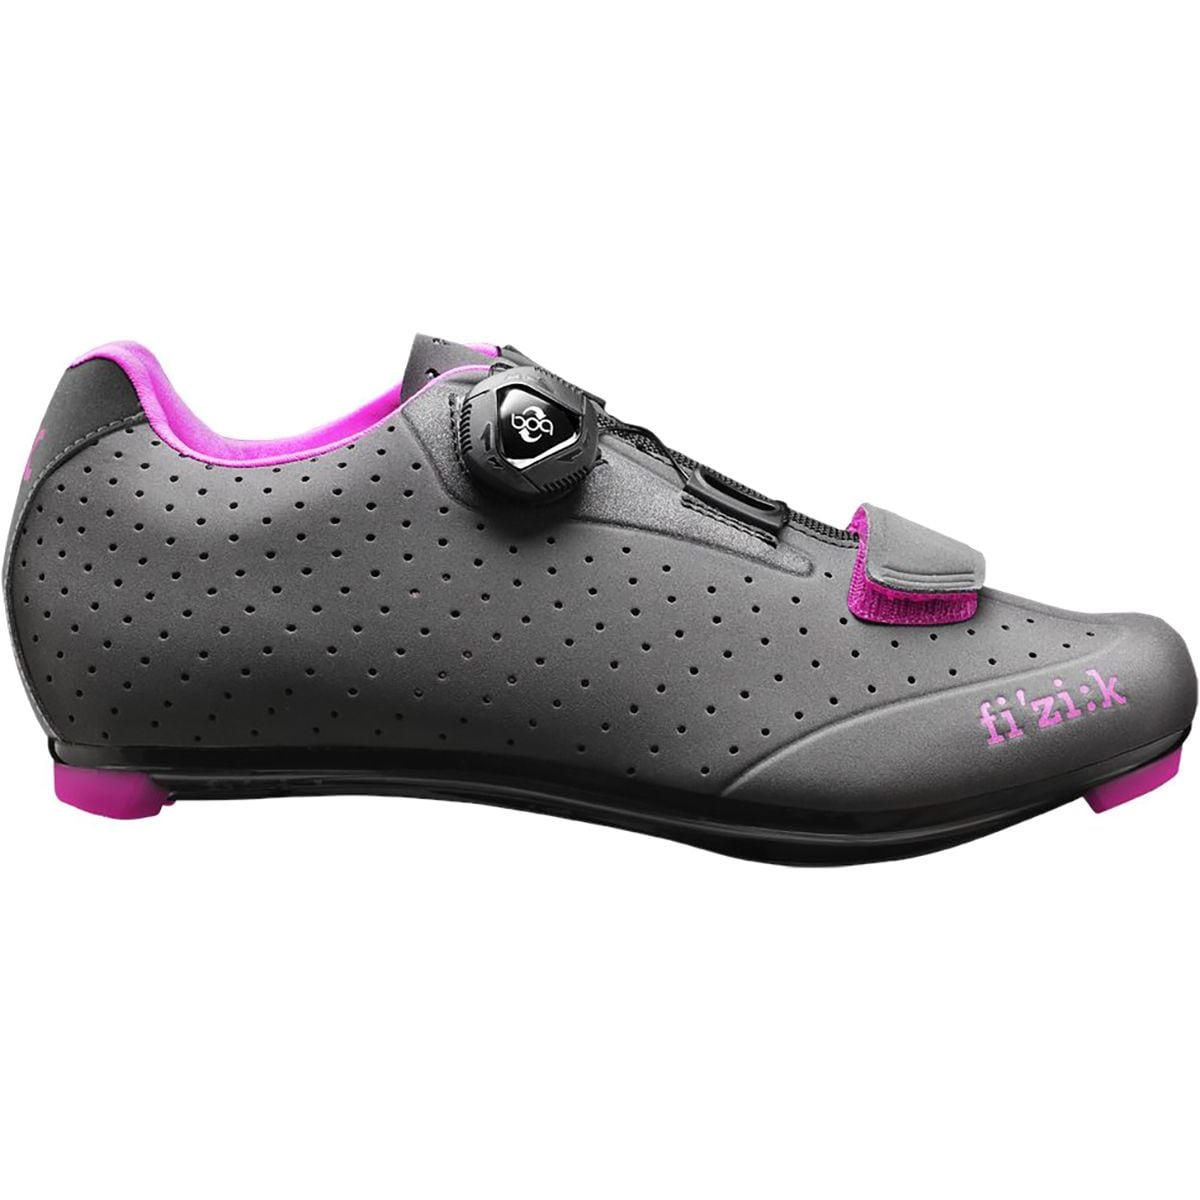 Fi'zi:k R5 Donna Boa Cycling Shoe - Women's